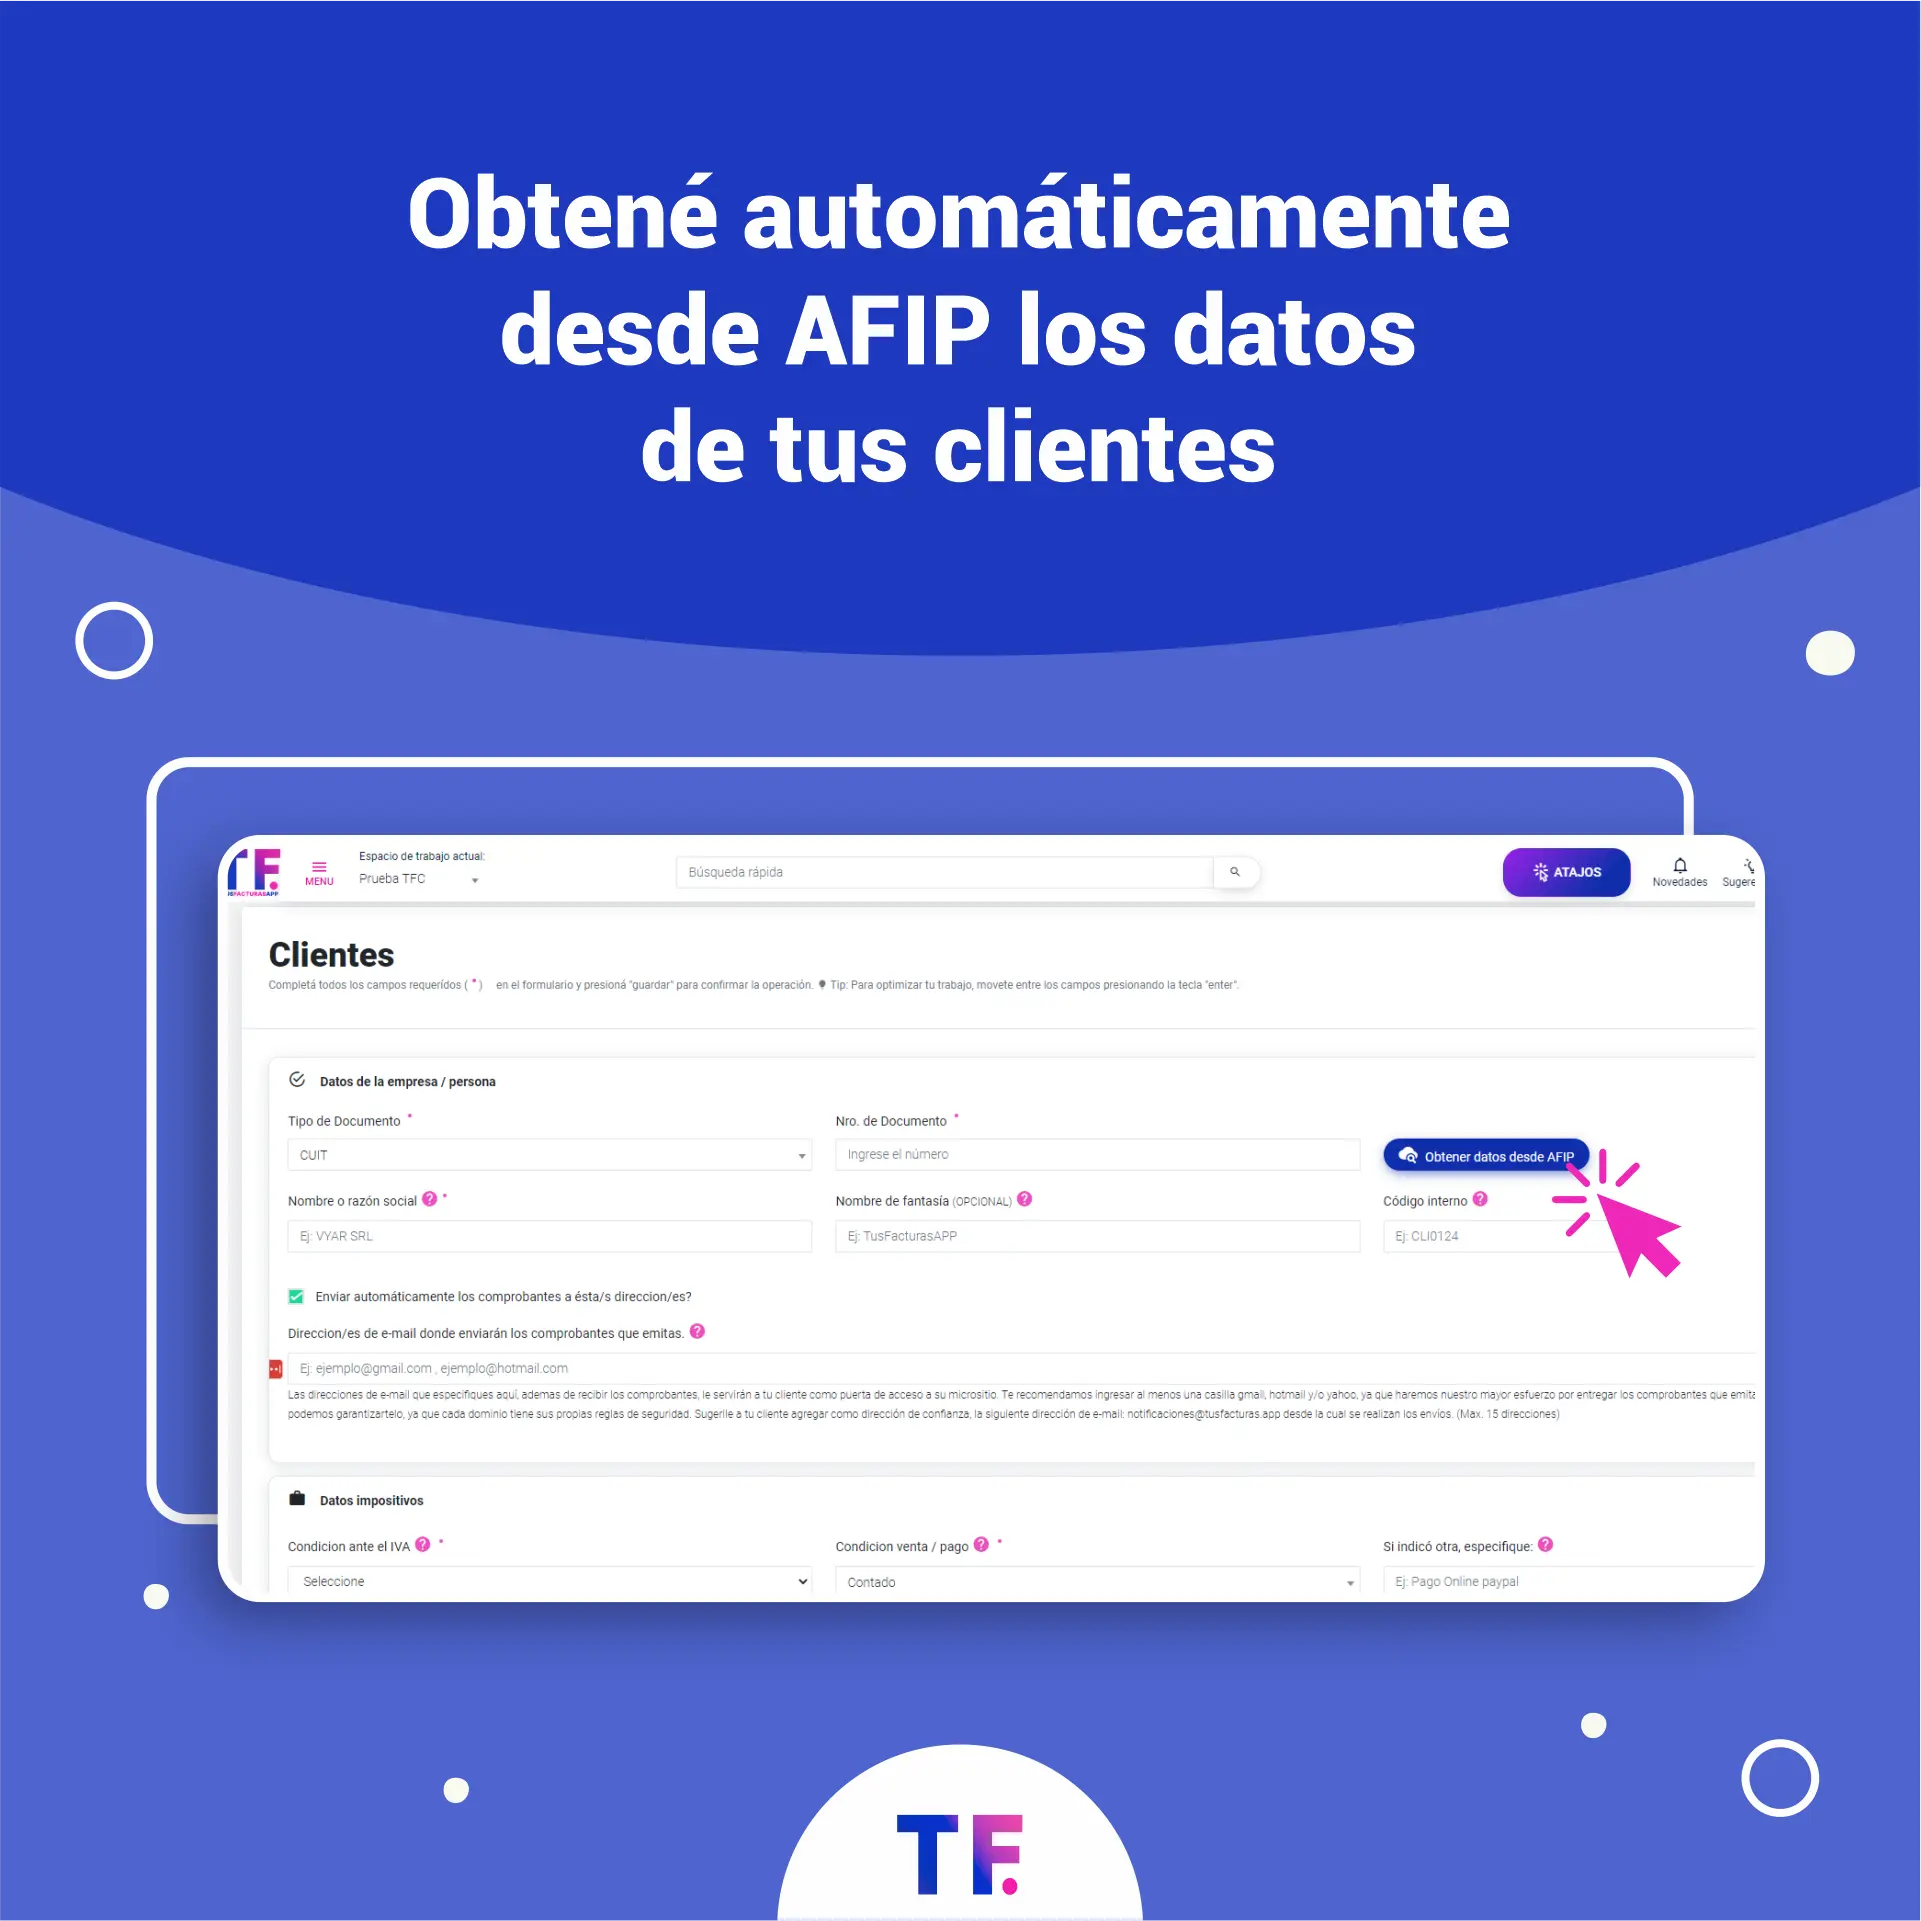 TusFacturasAPP: Software de gestion y Software de facturacion Argentina. Obtené los datos de tu cliente automáticamente